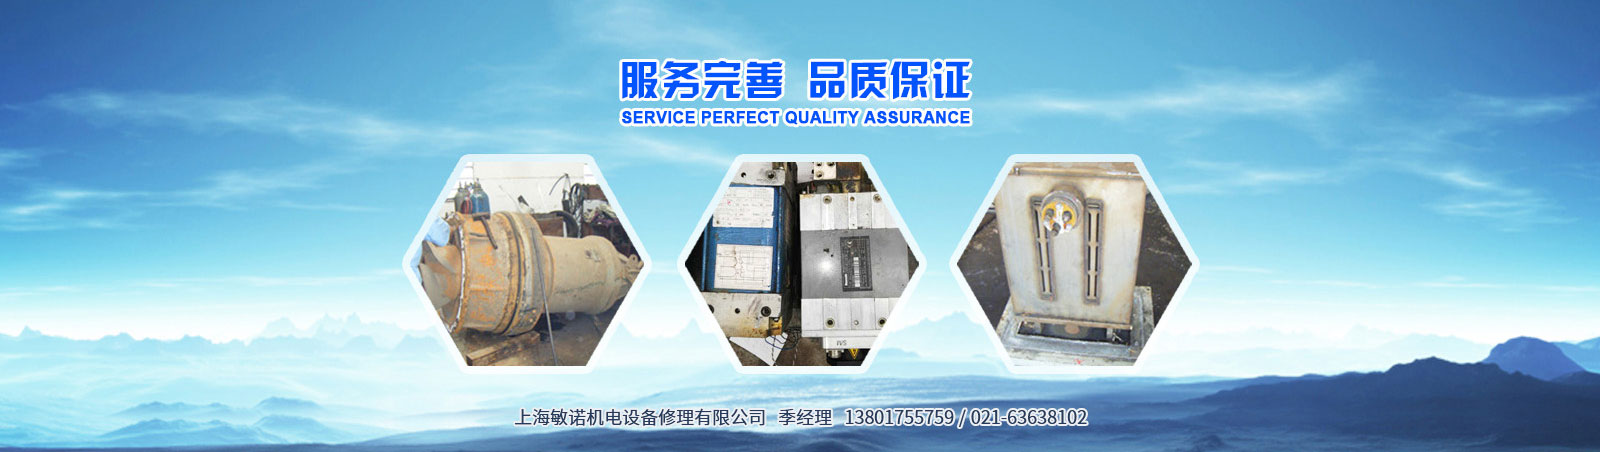 上海敏诺机电设备修理有限公司